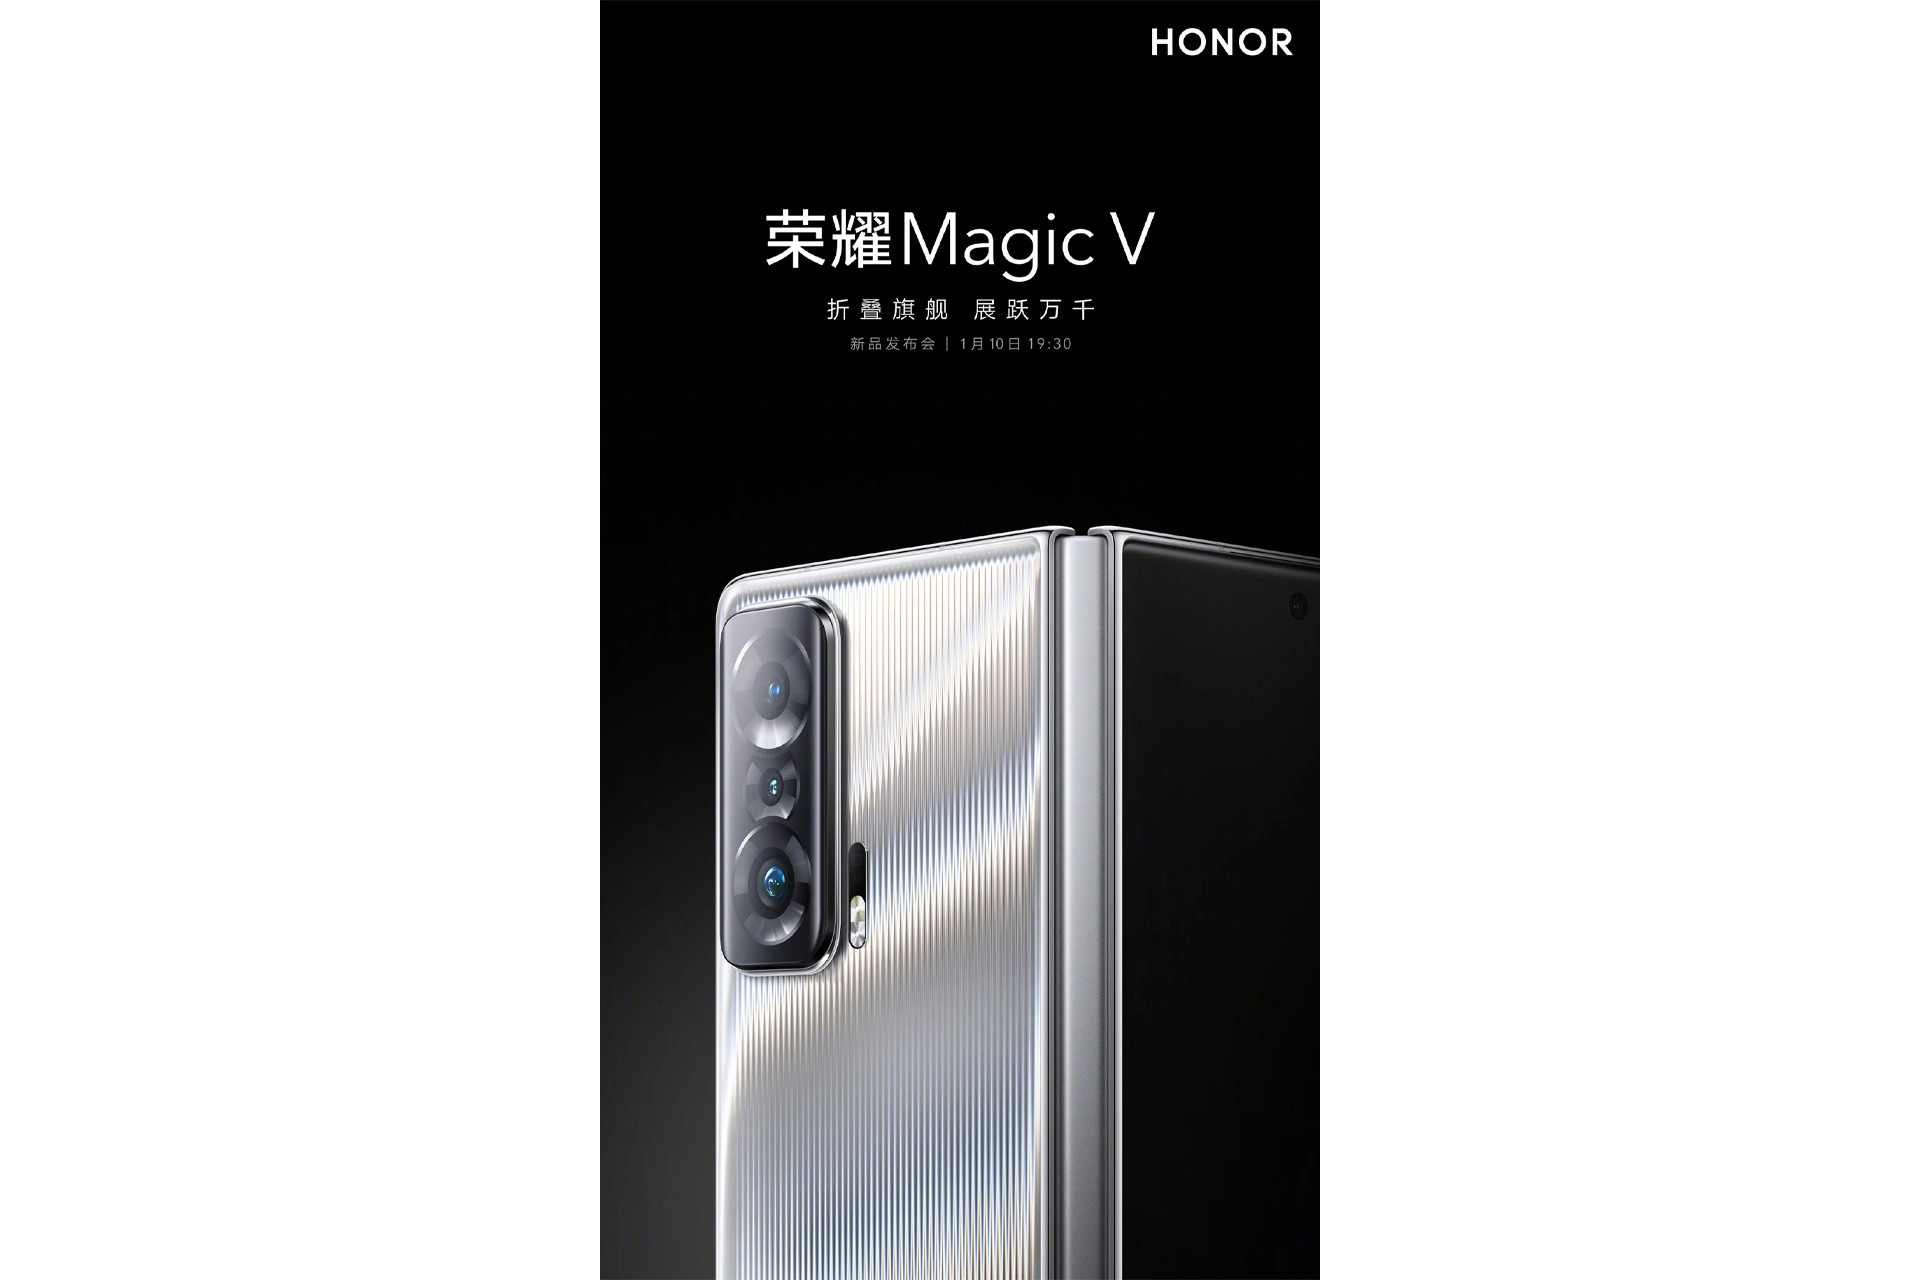 پوستر رسمی Honor Magic V